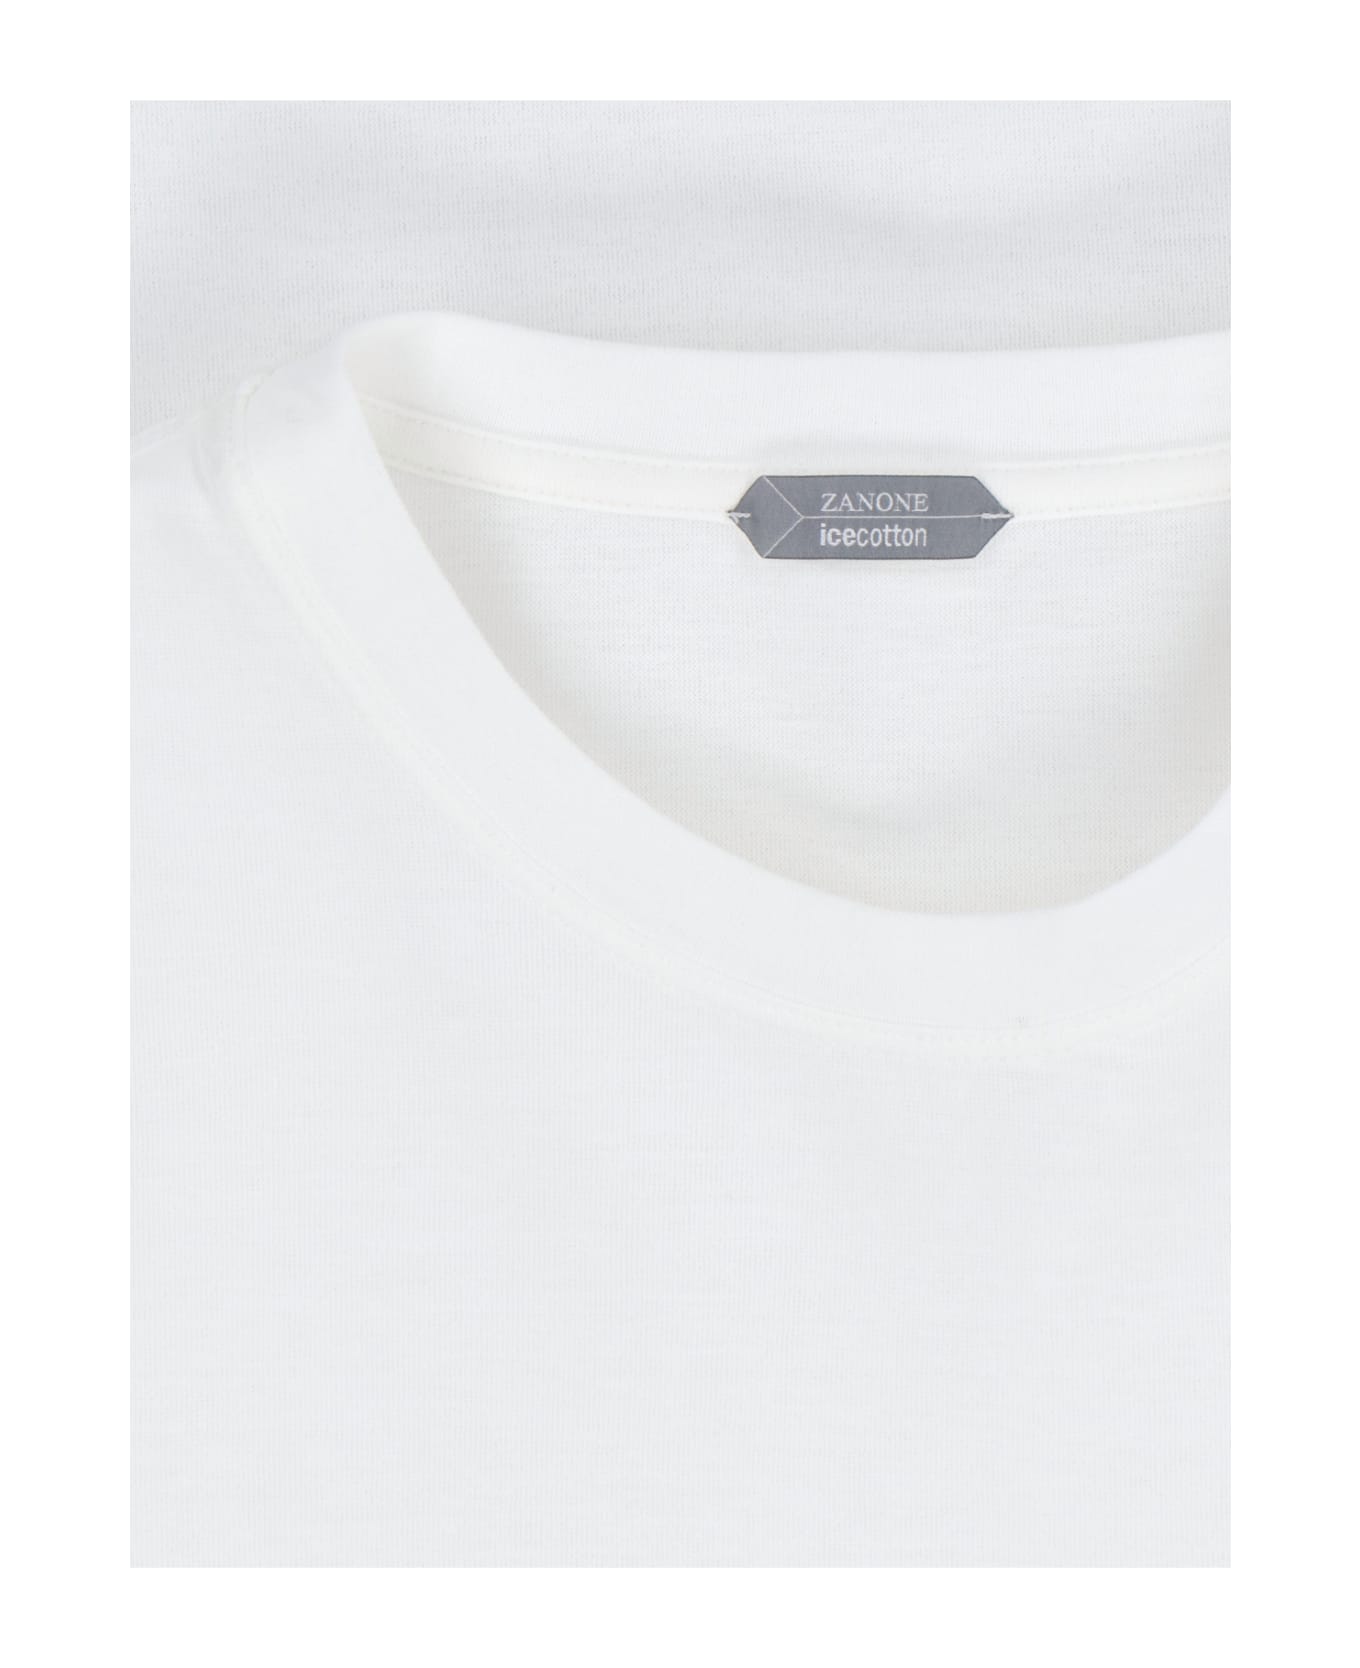 Zanone Basic T-shirt - White シャツ